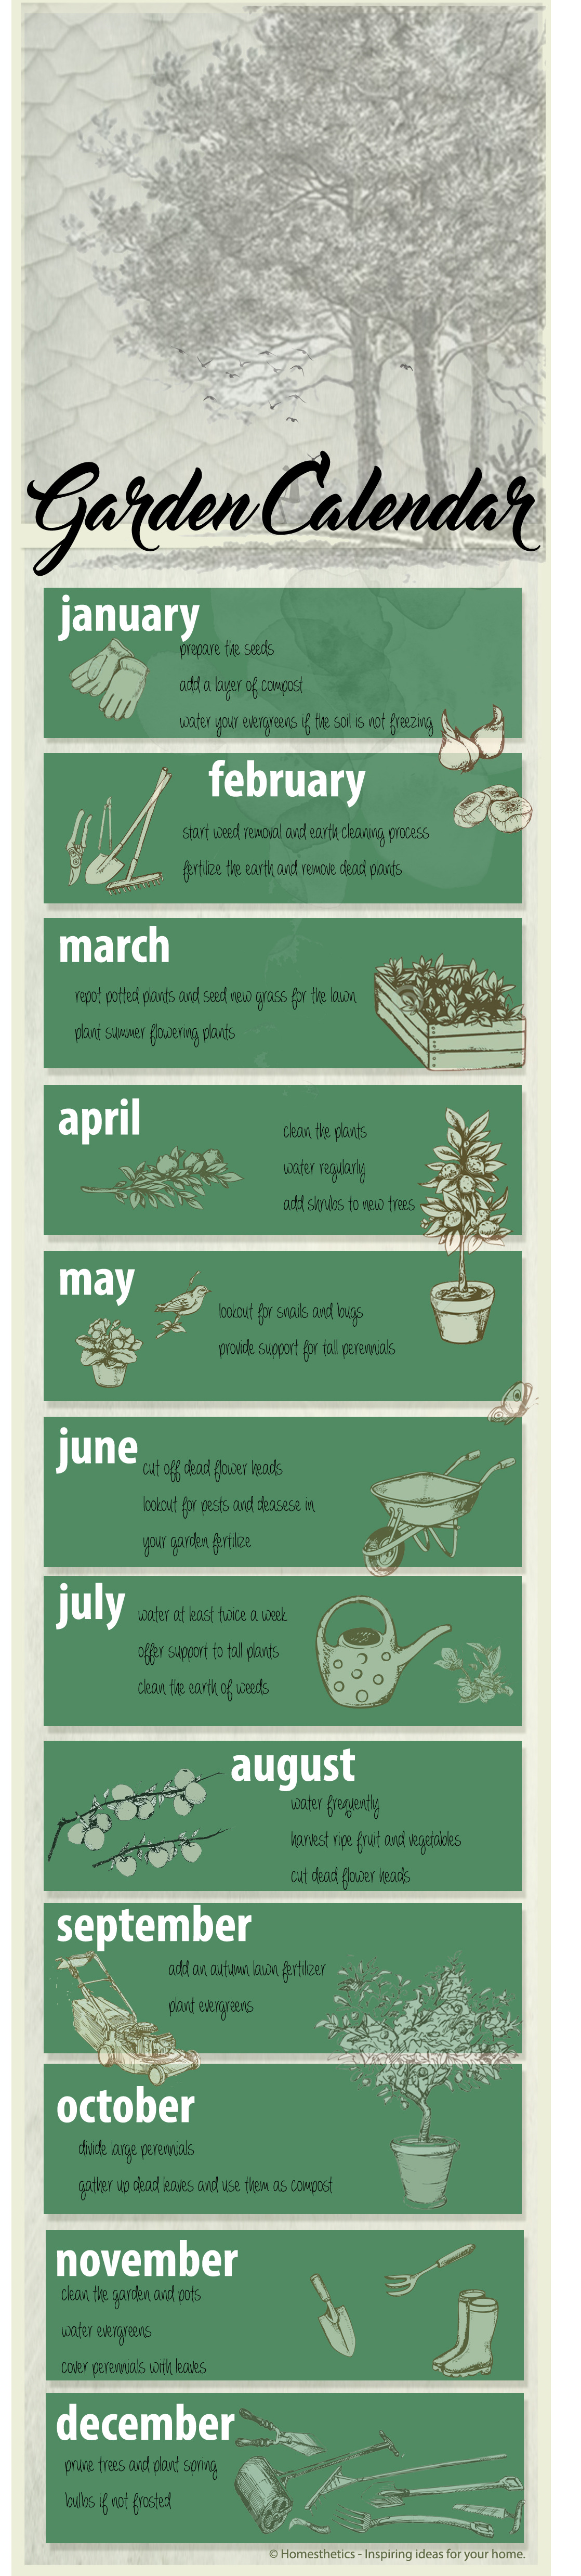 Garden-Calendar-Available-Ideas